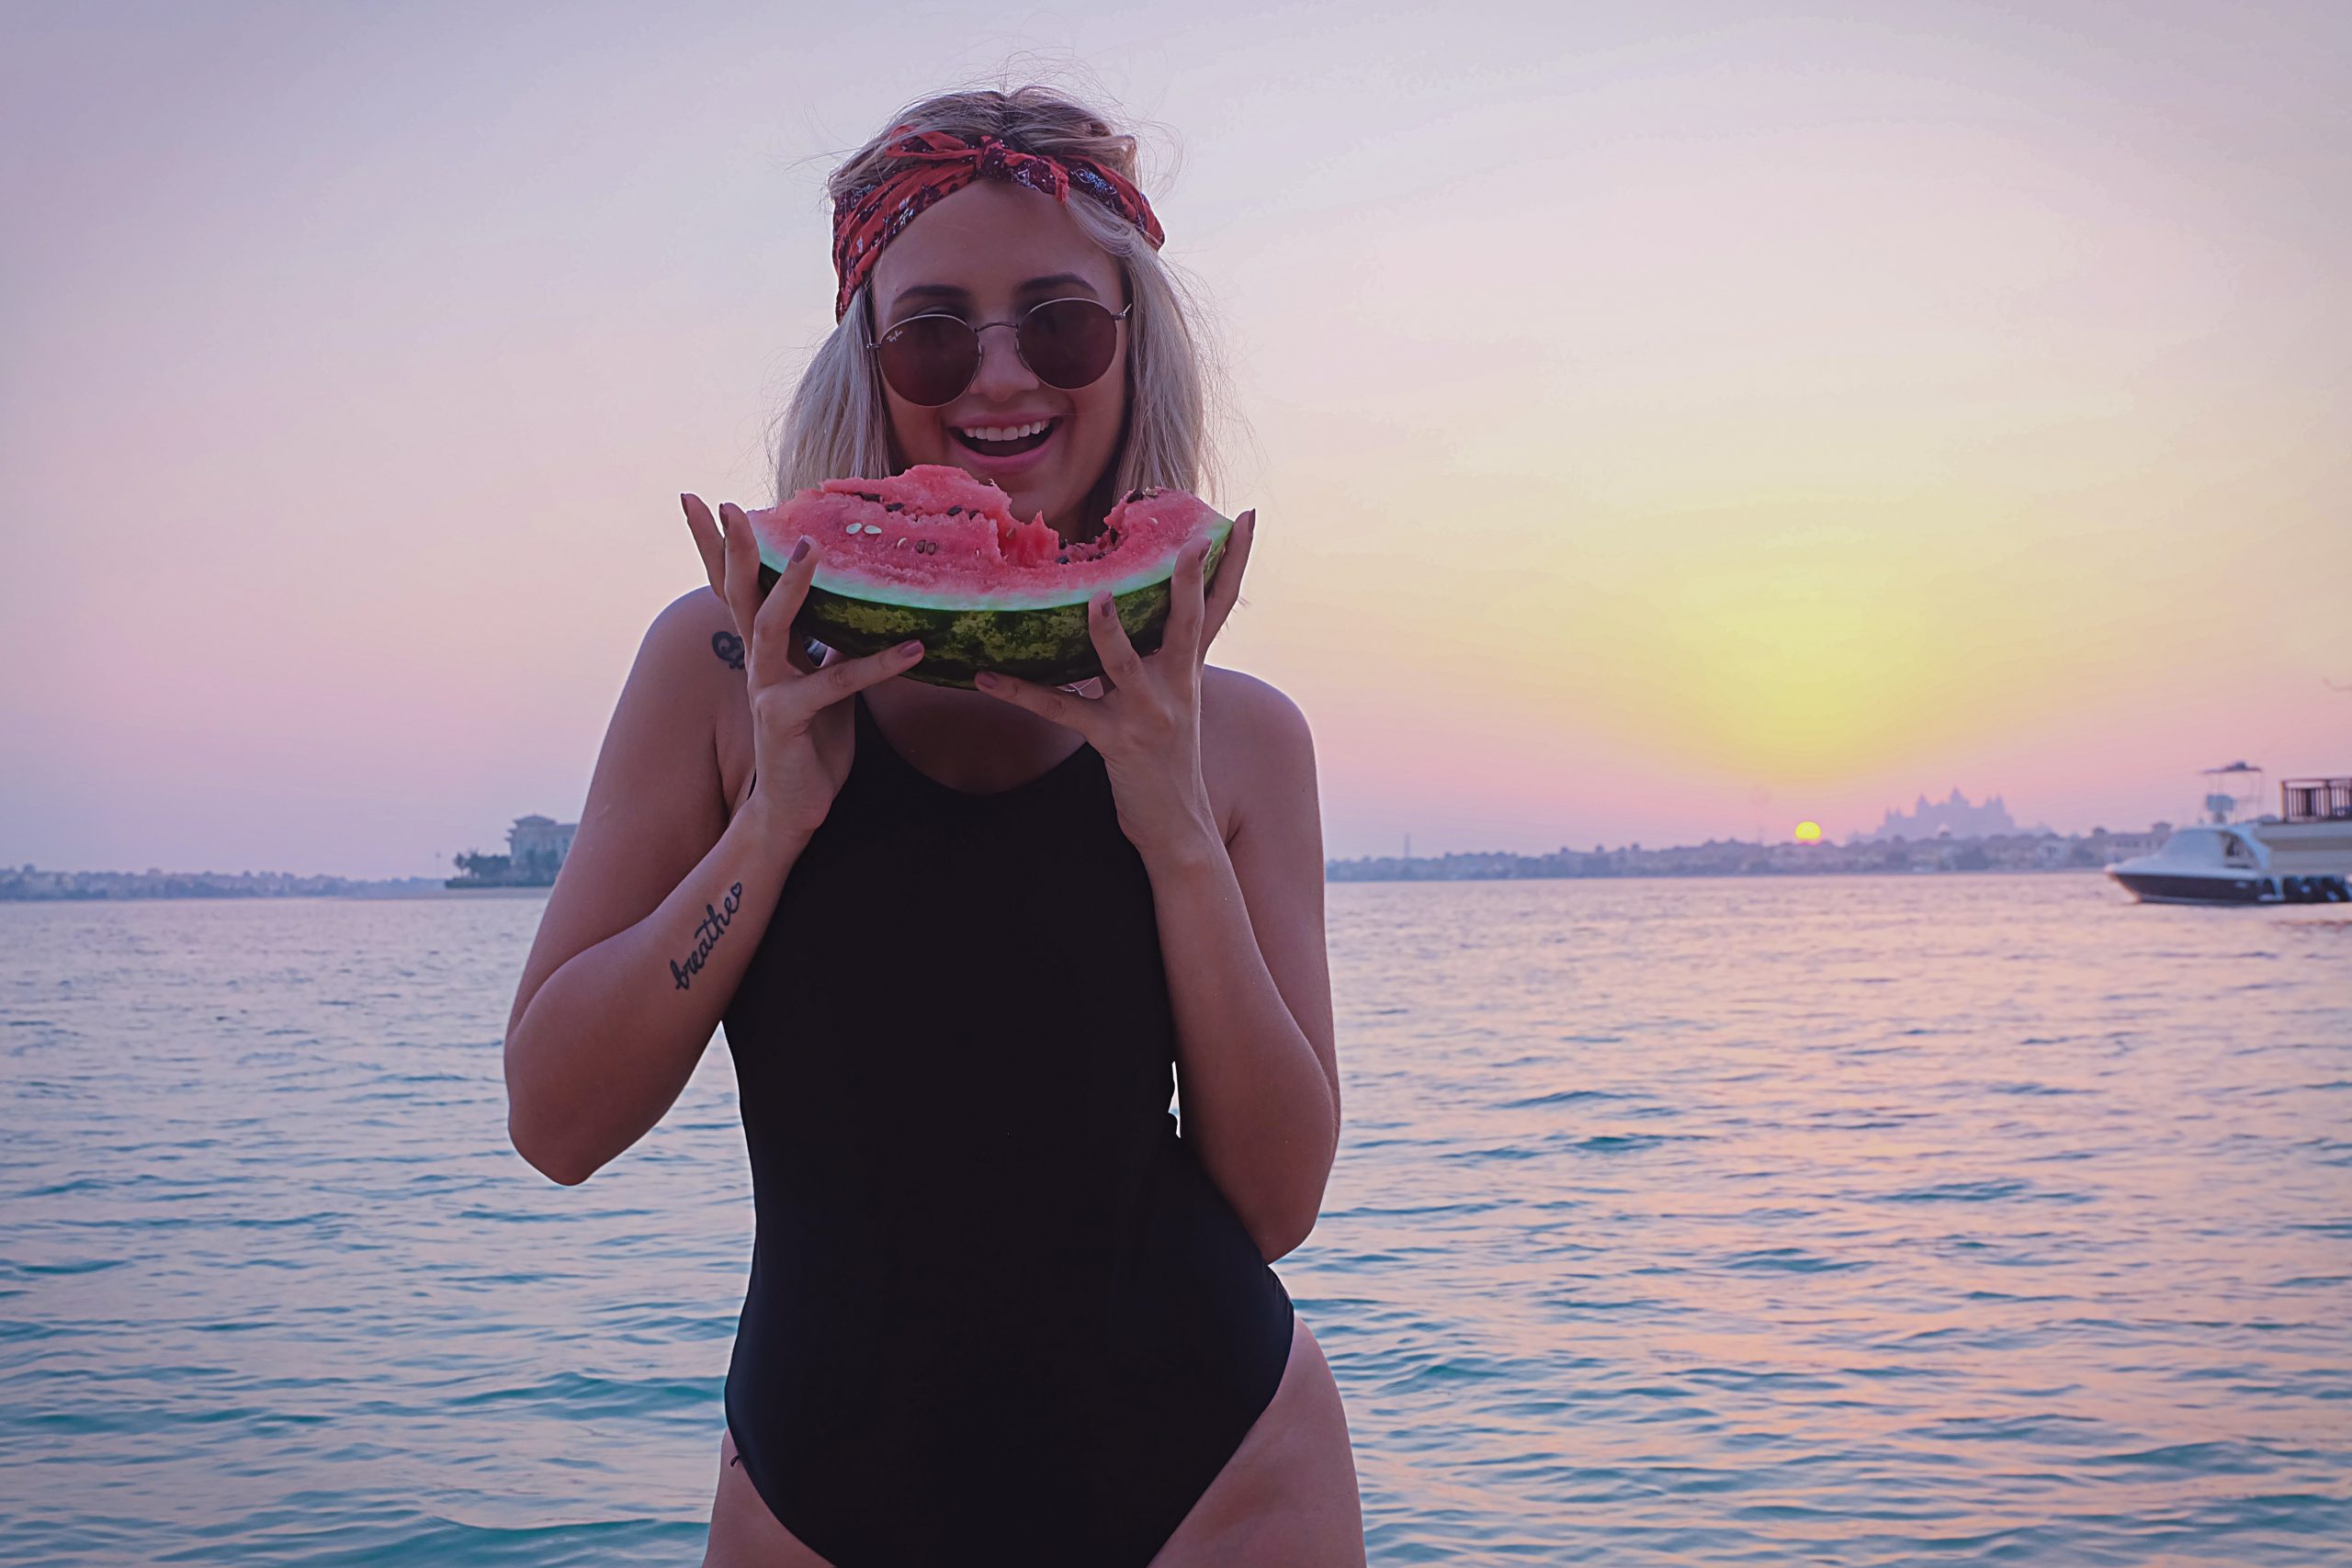 Frau mit Wassermelone in der Hand, dabei lächelnd